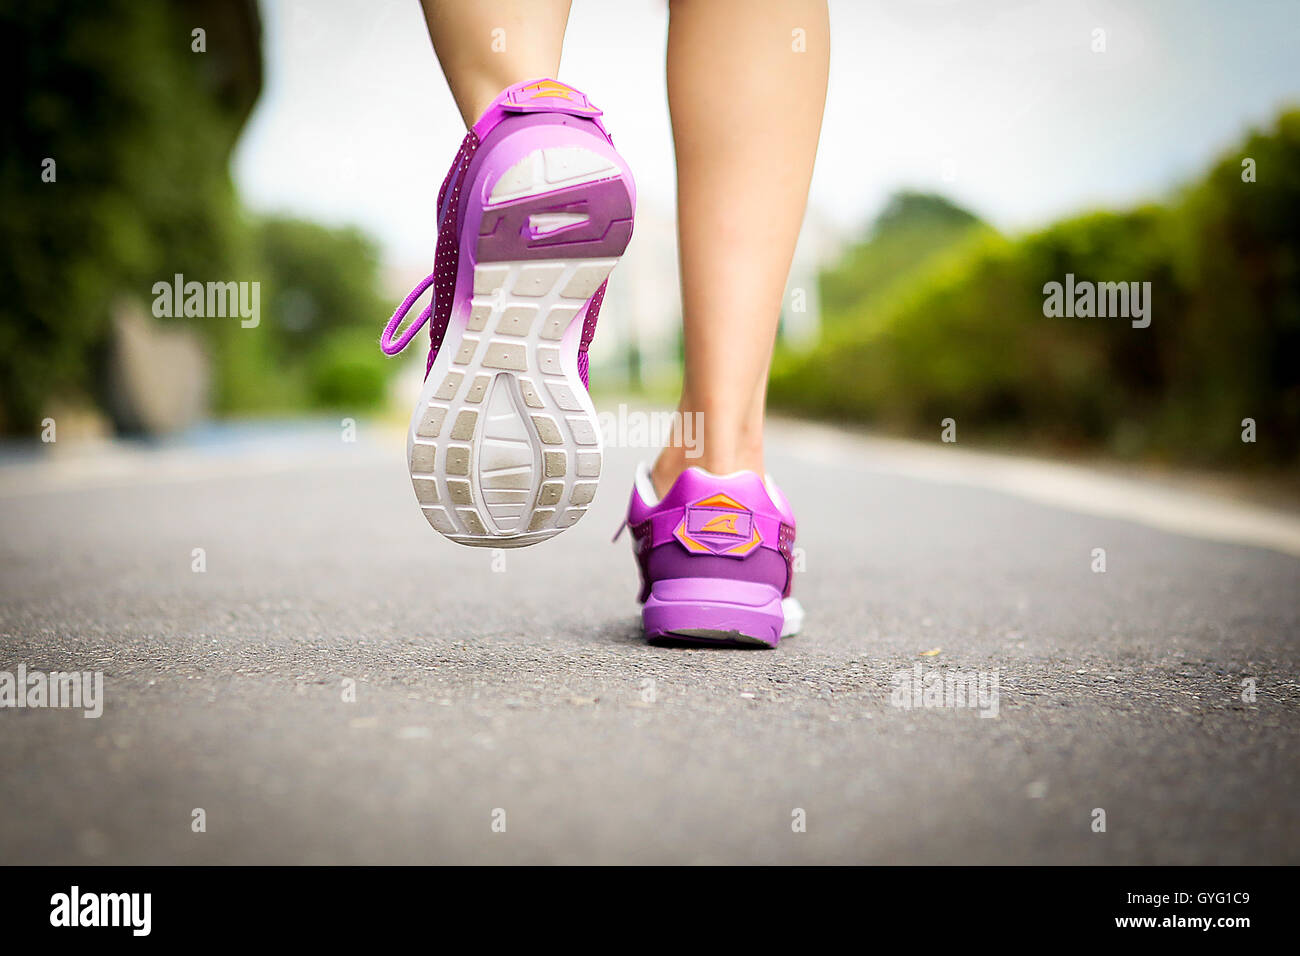 Atleta runner pies corriendo por la carretera closeup en la zapata. Mujer fitness entrenamiento jog concepto wellness. Foto de stock